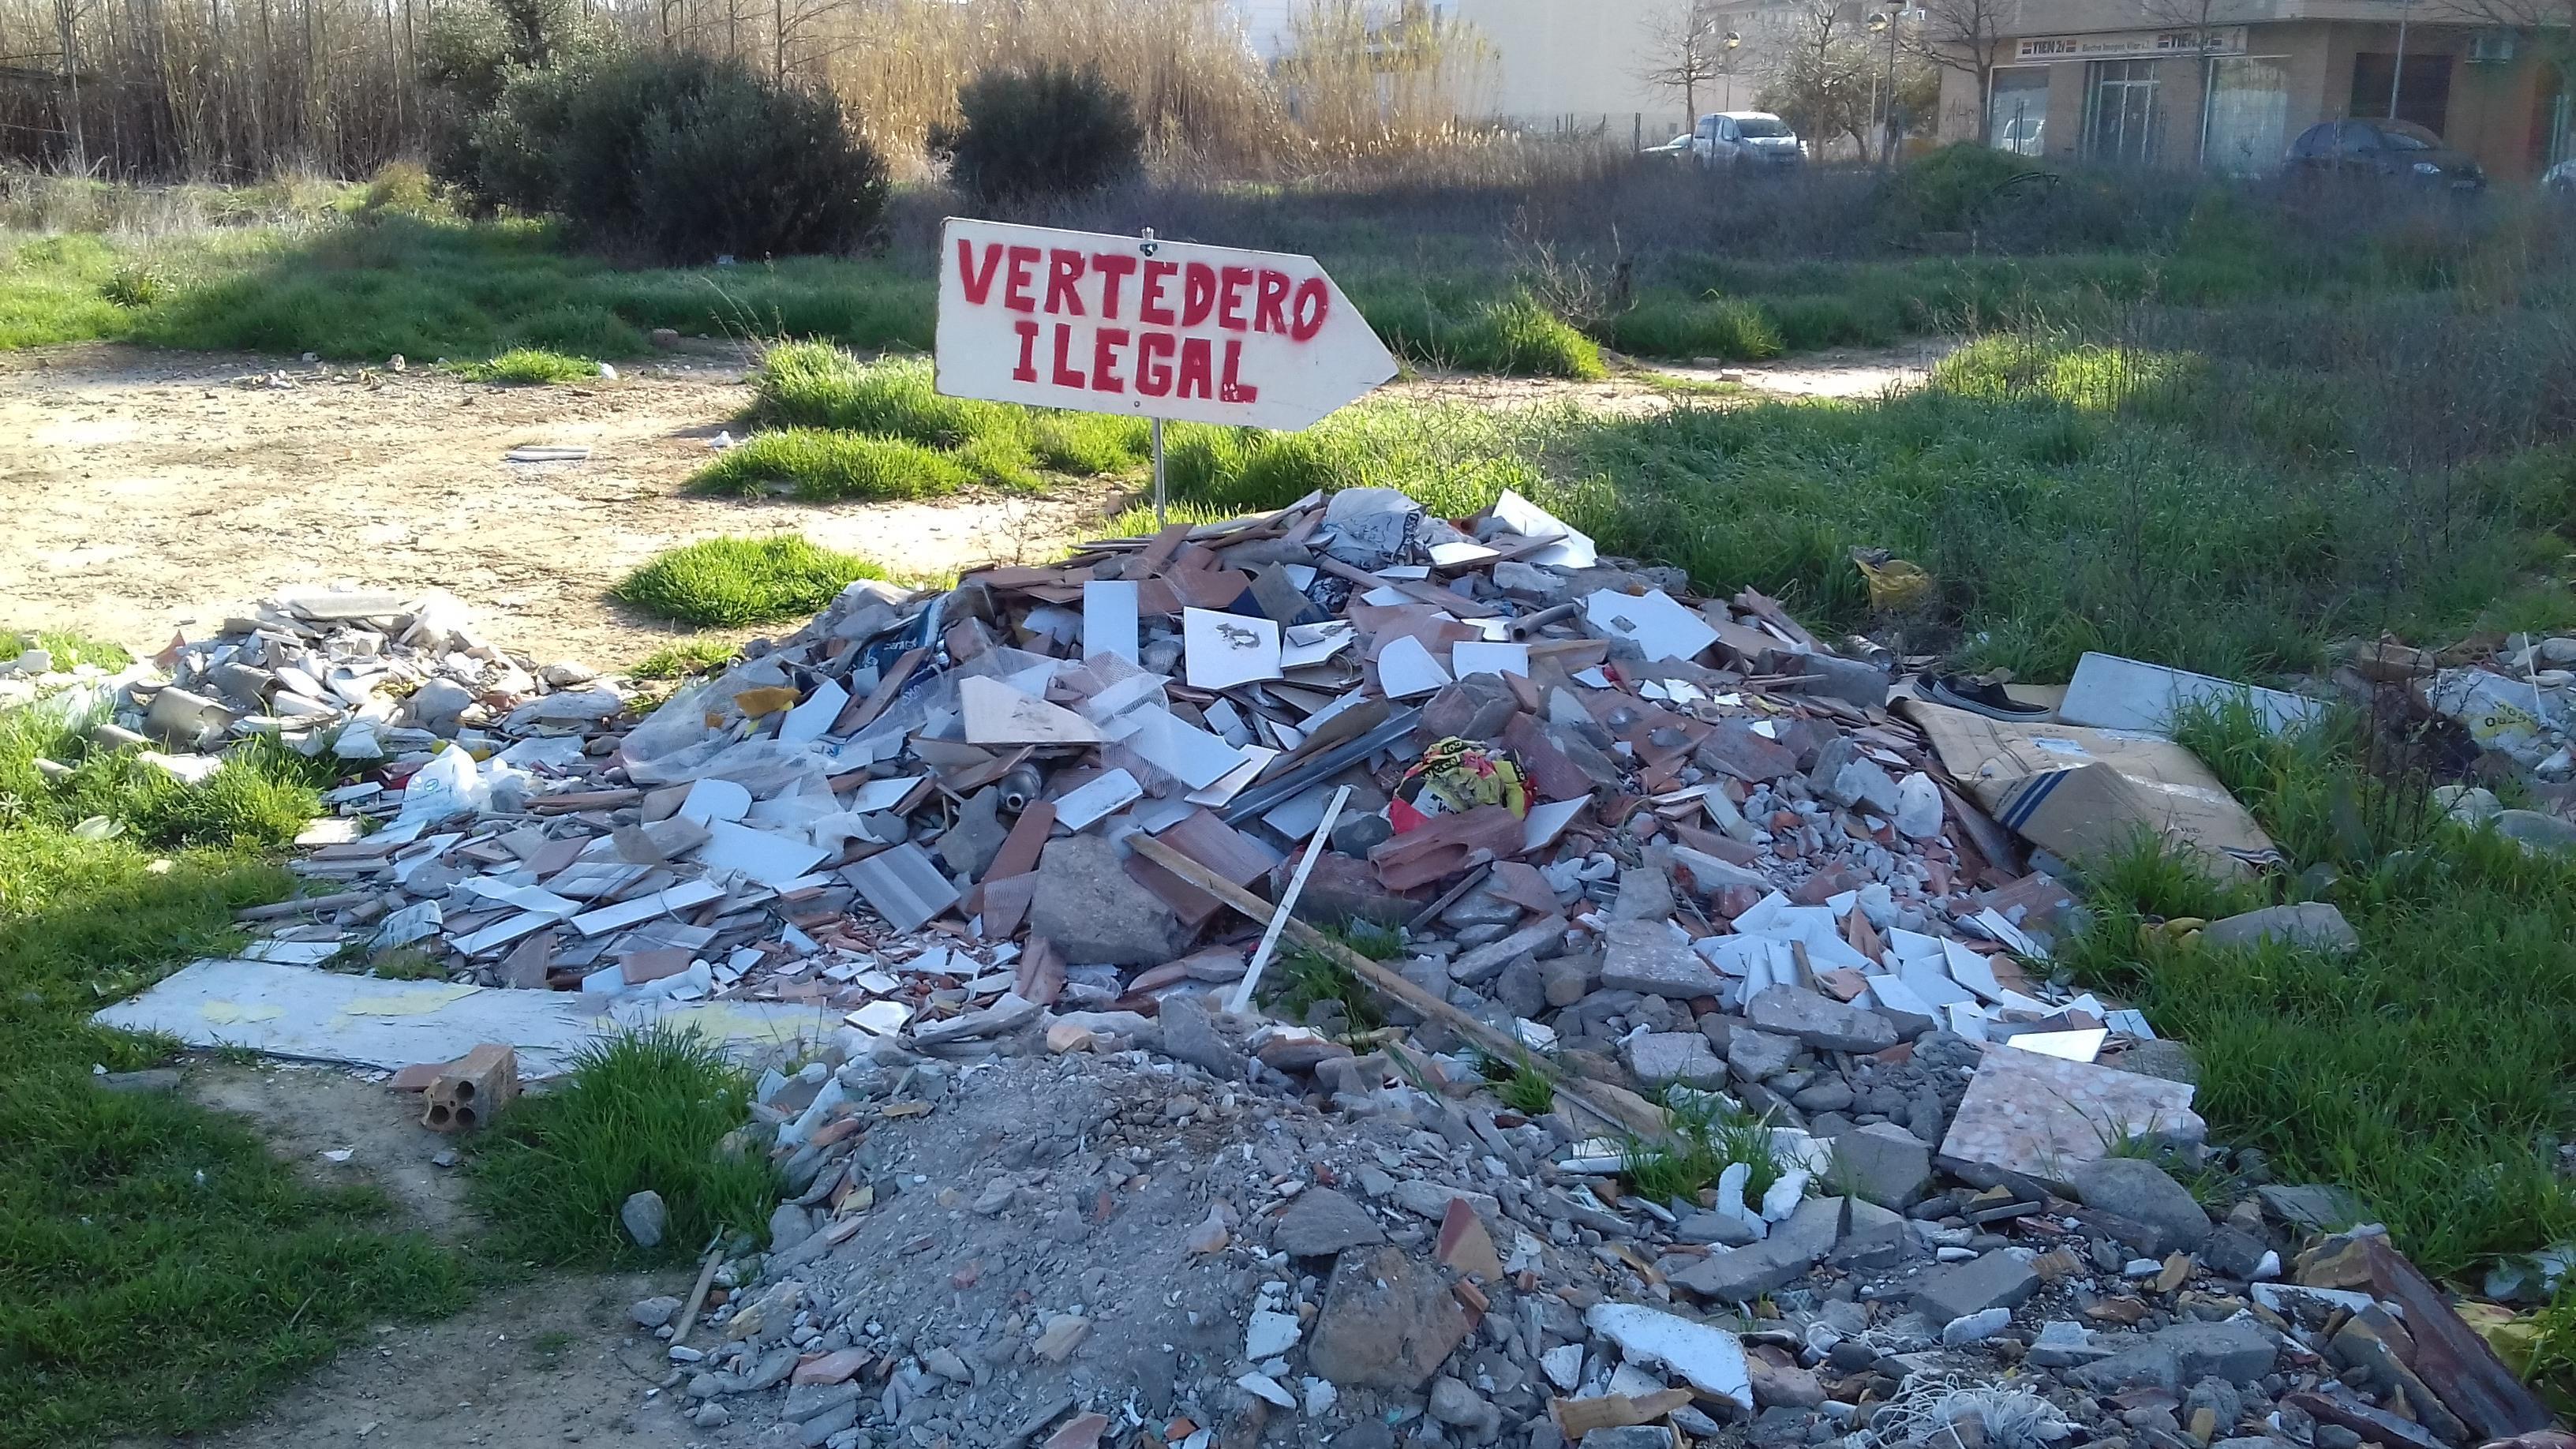 Acción simbólica para denunciar varios vertederos ilegales en el término municipal de Fraga y exigir su erradicación